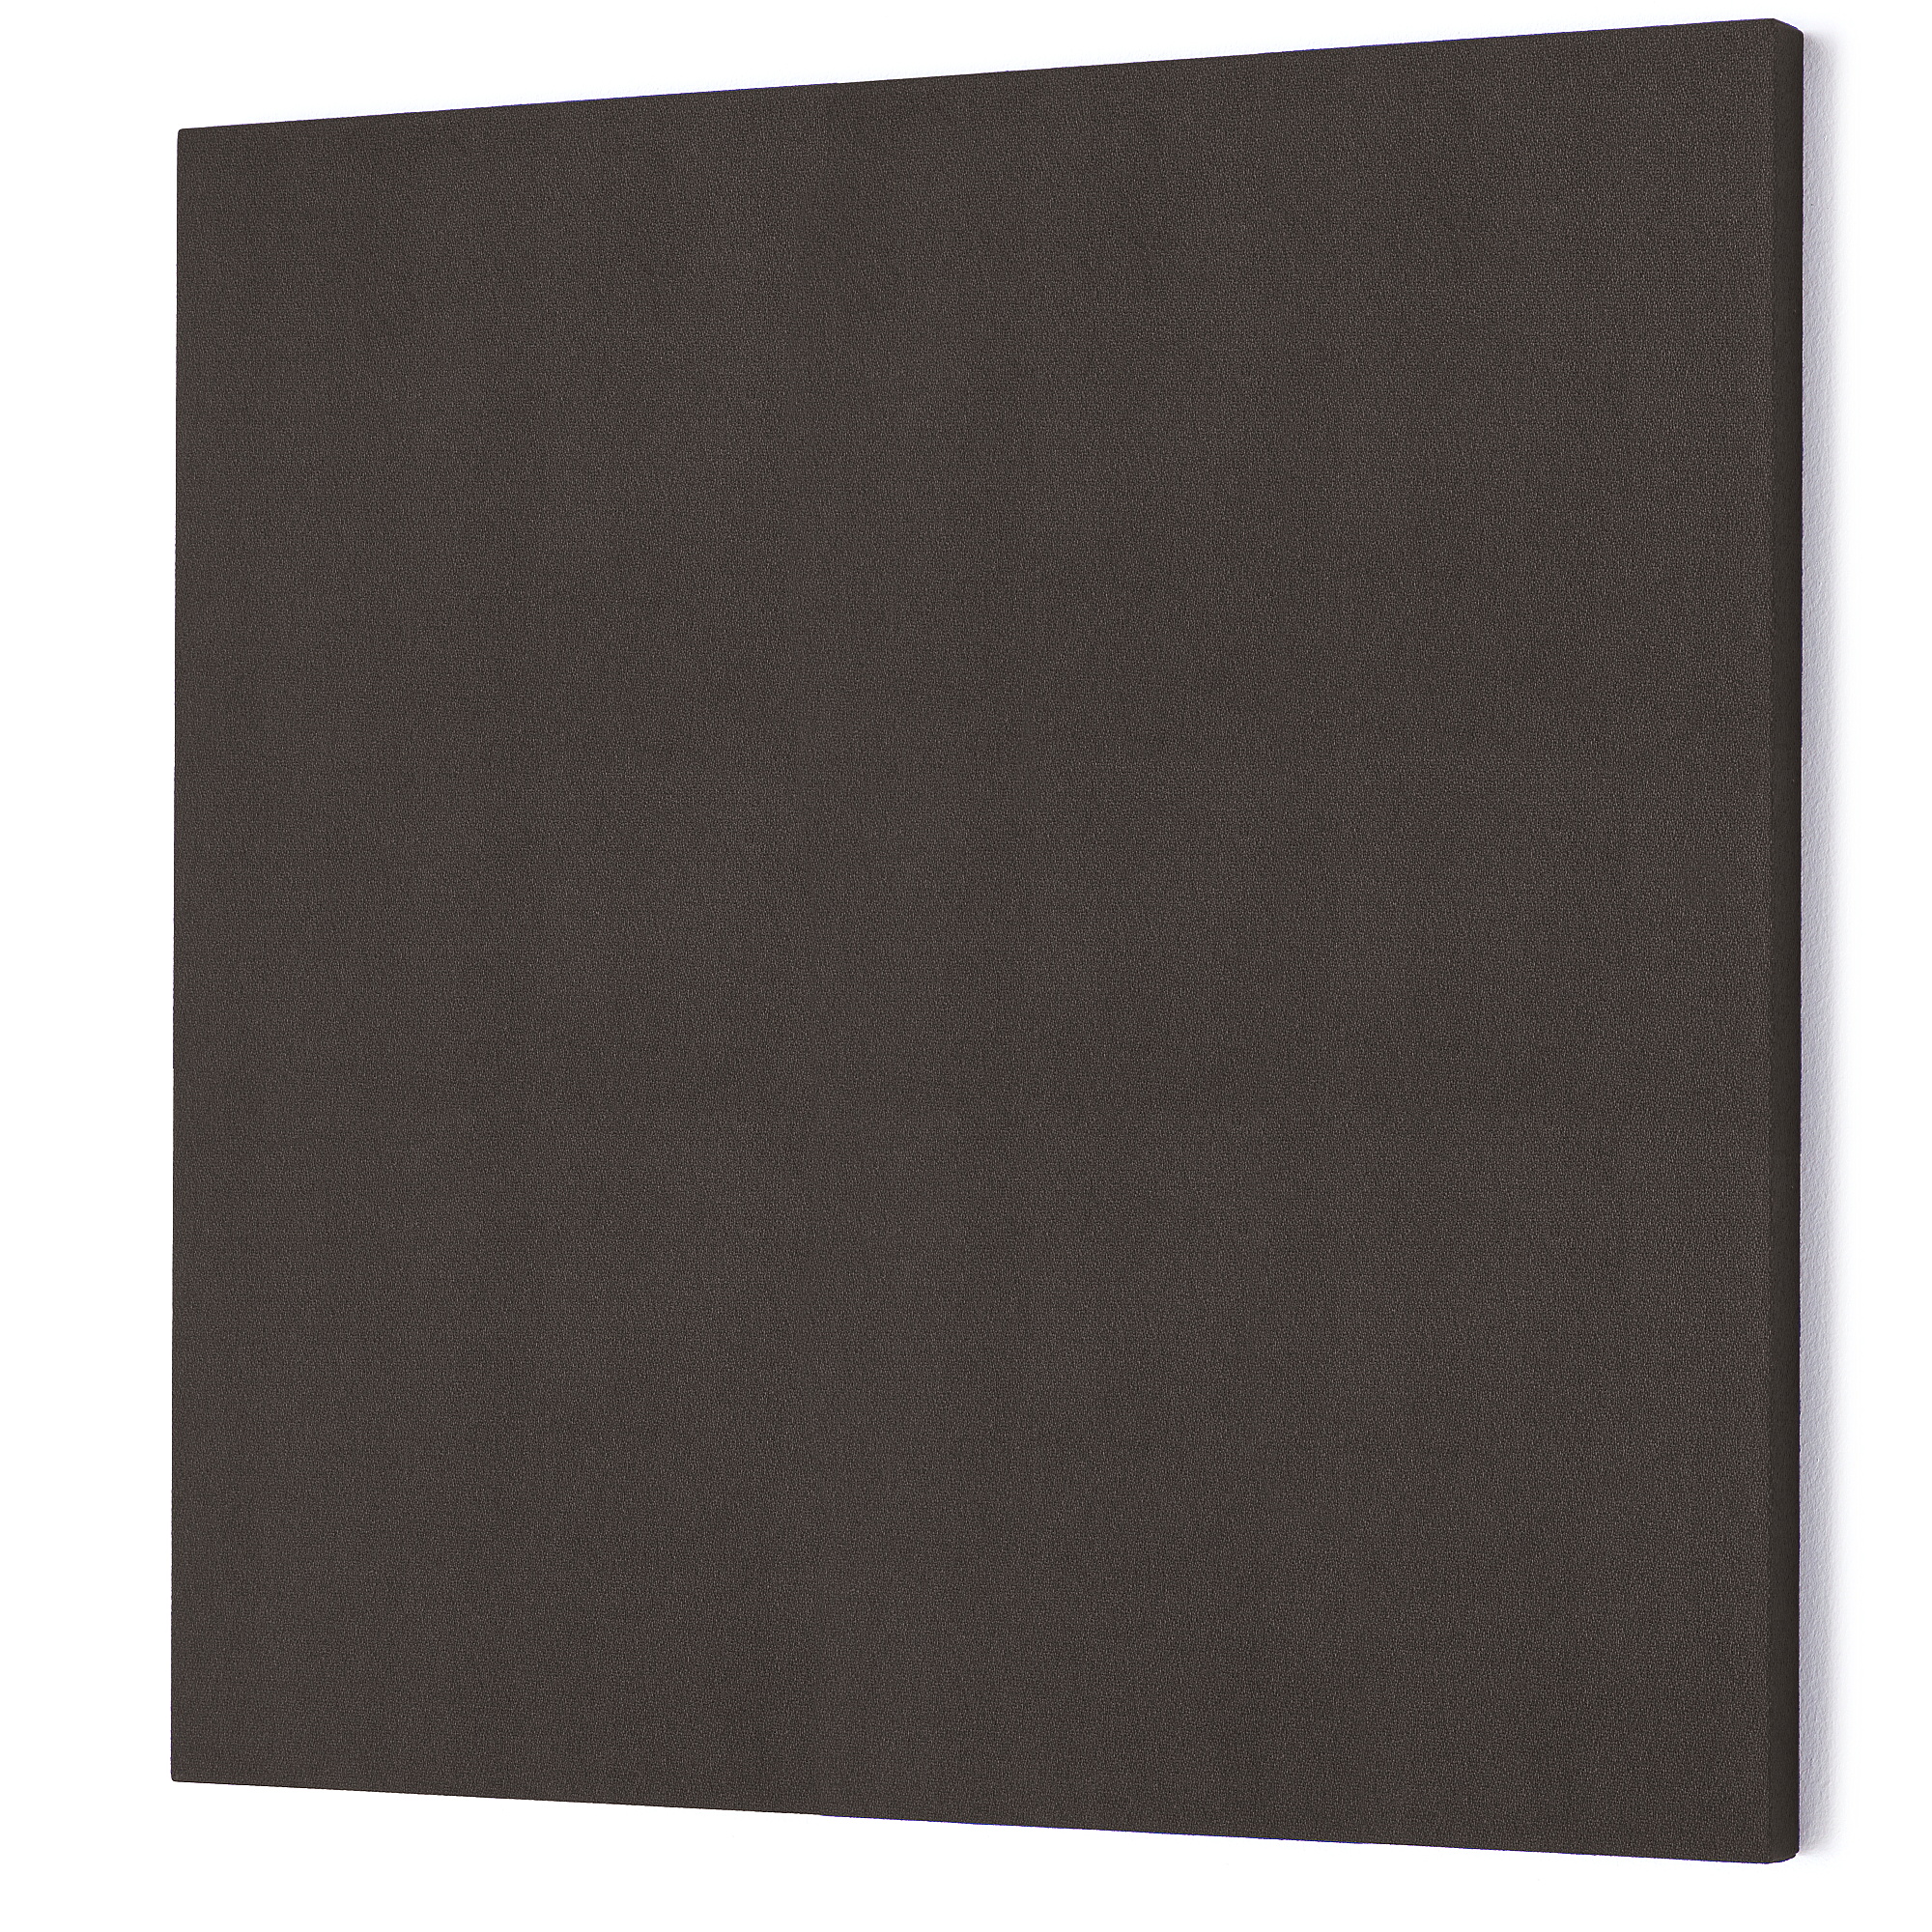 Akustický panel POLY, čtverec, 1180x1180x56 mm, tmavě šedý